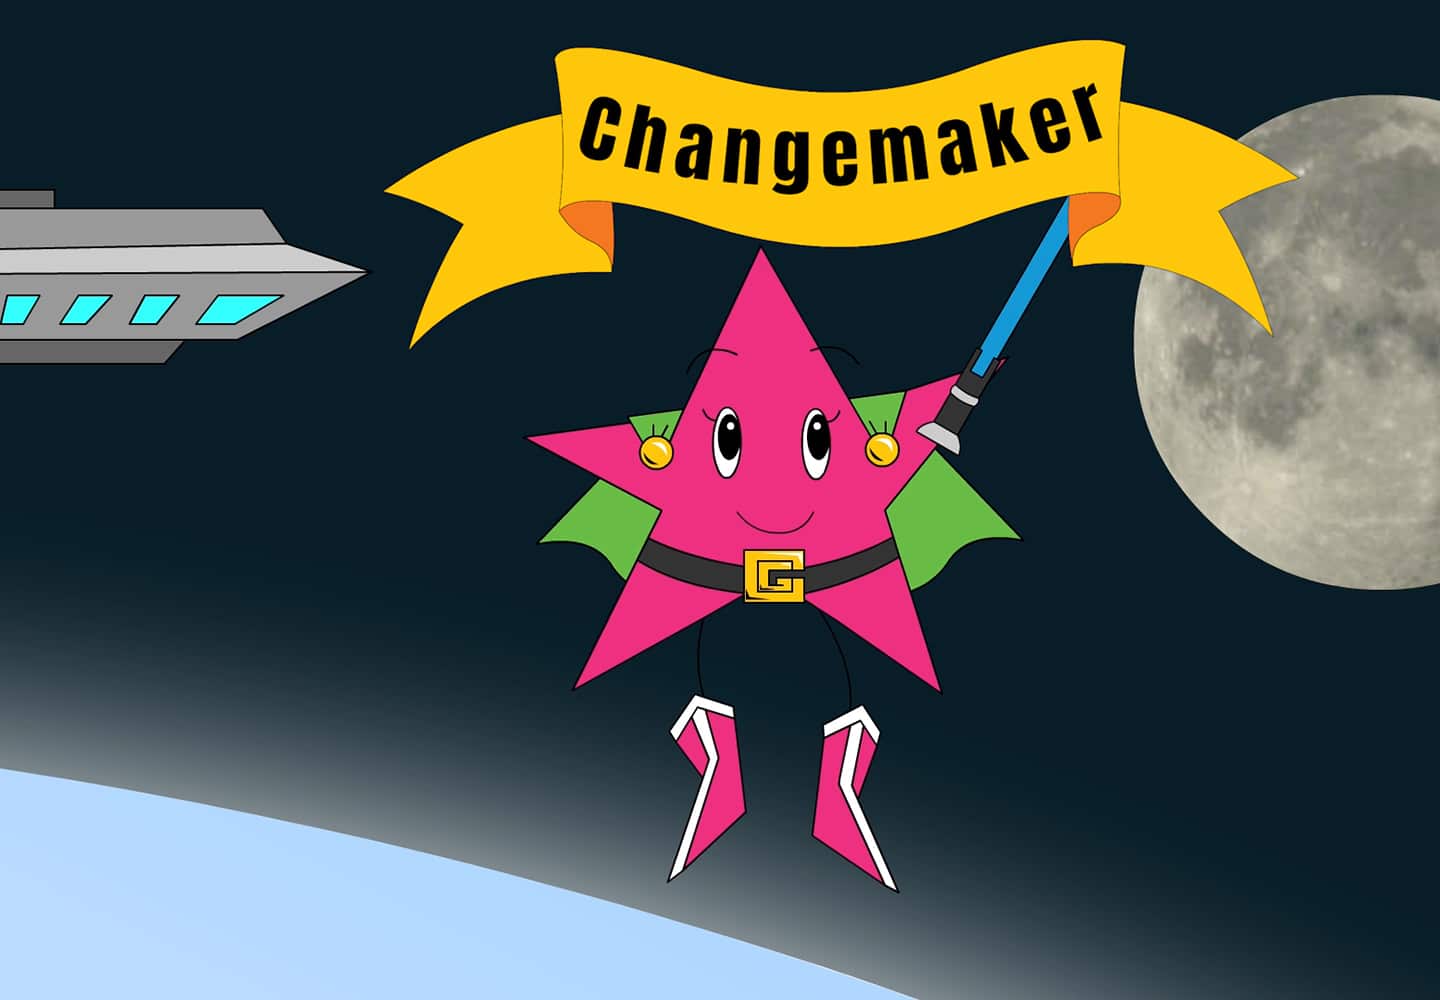 Changemaker star in space